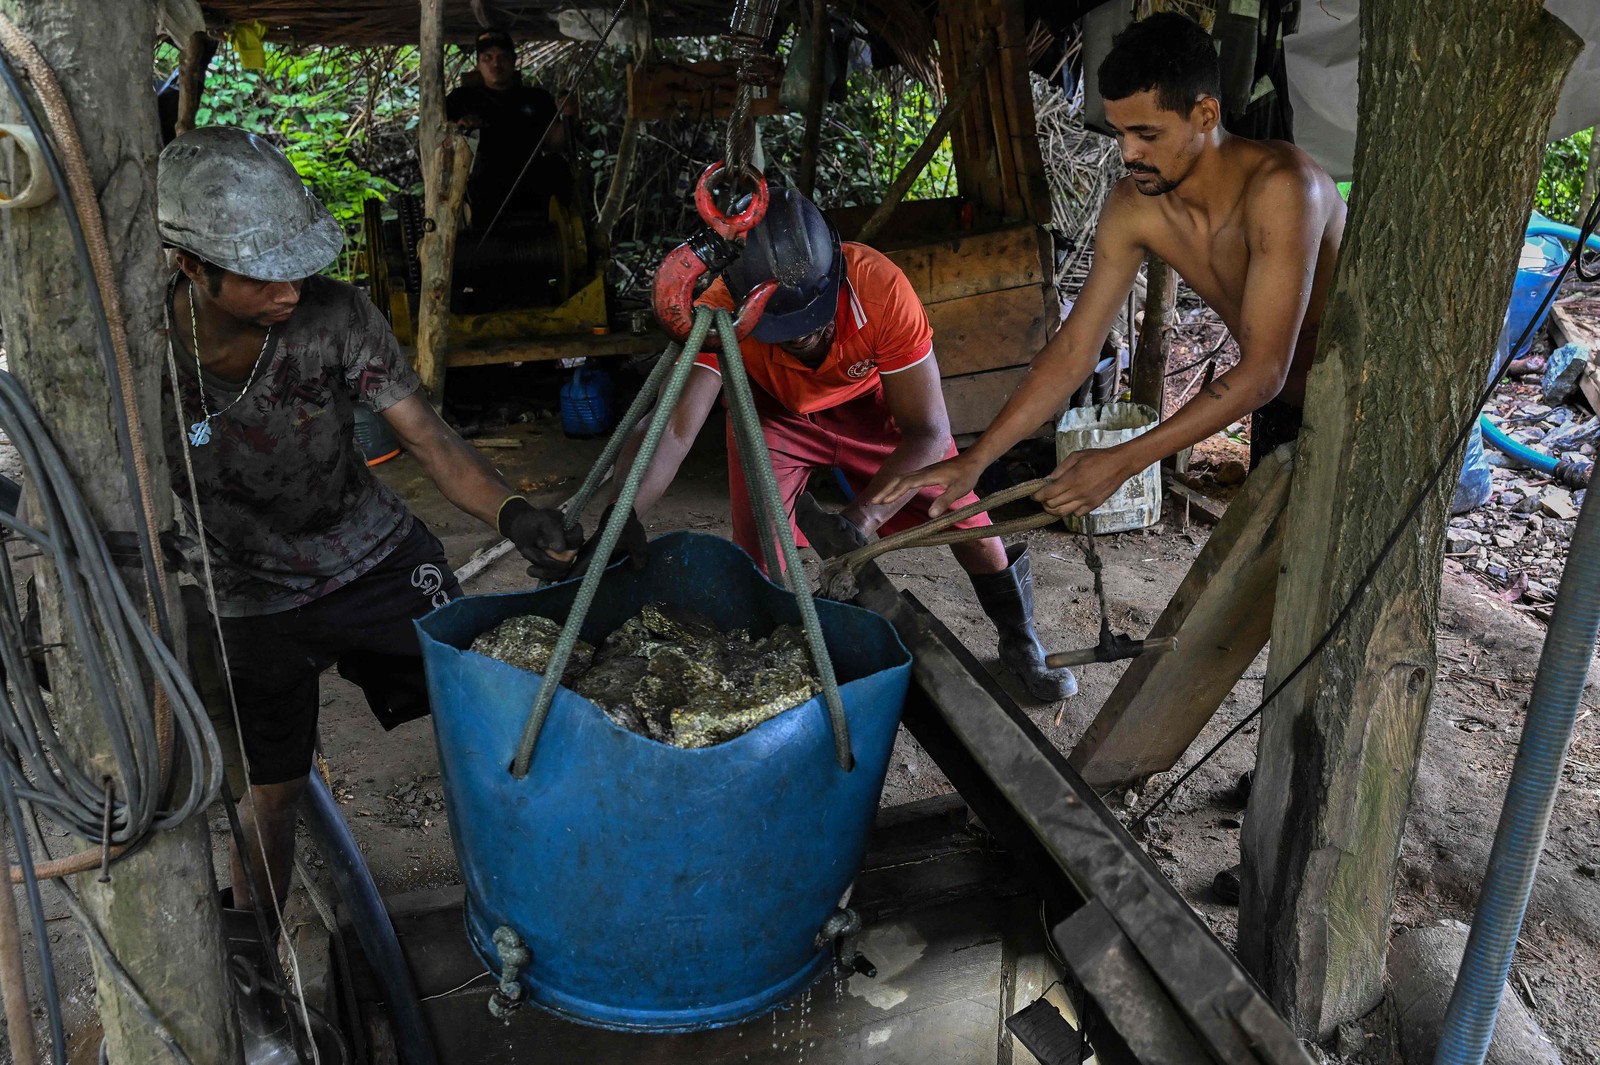 Mineradores trabalham em mina de cobre ilegal. Eles vivem em alerta constante em caso de invasão. — Foto: Nelson Almeida /AFP